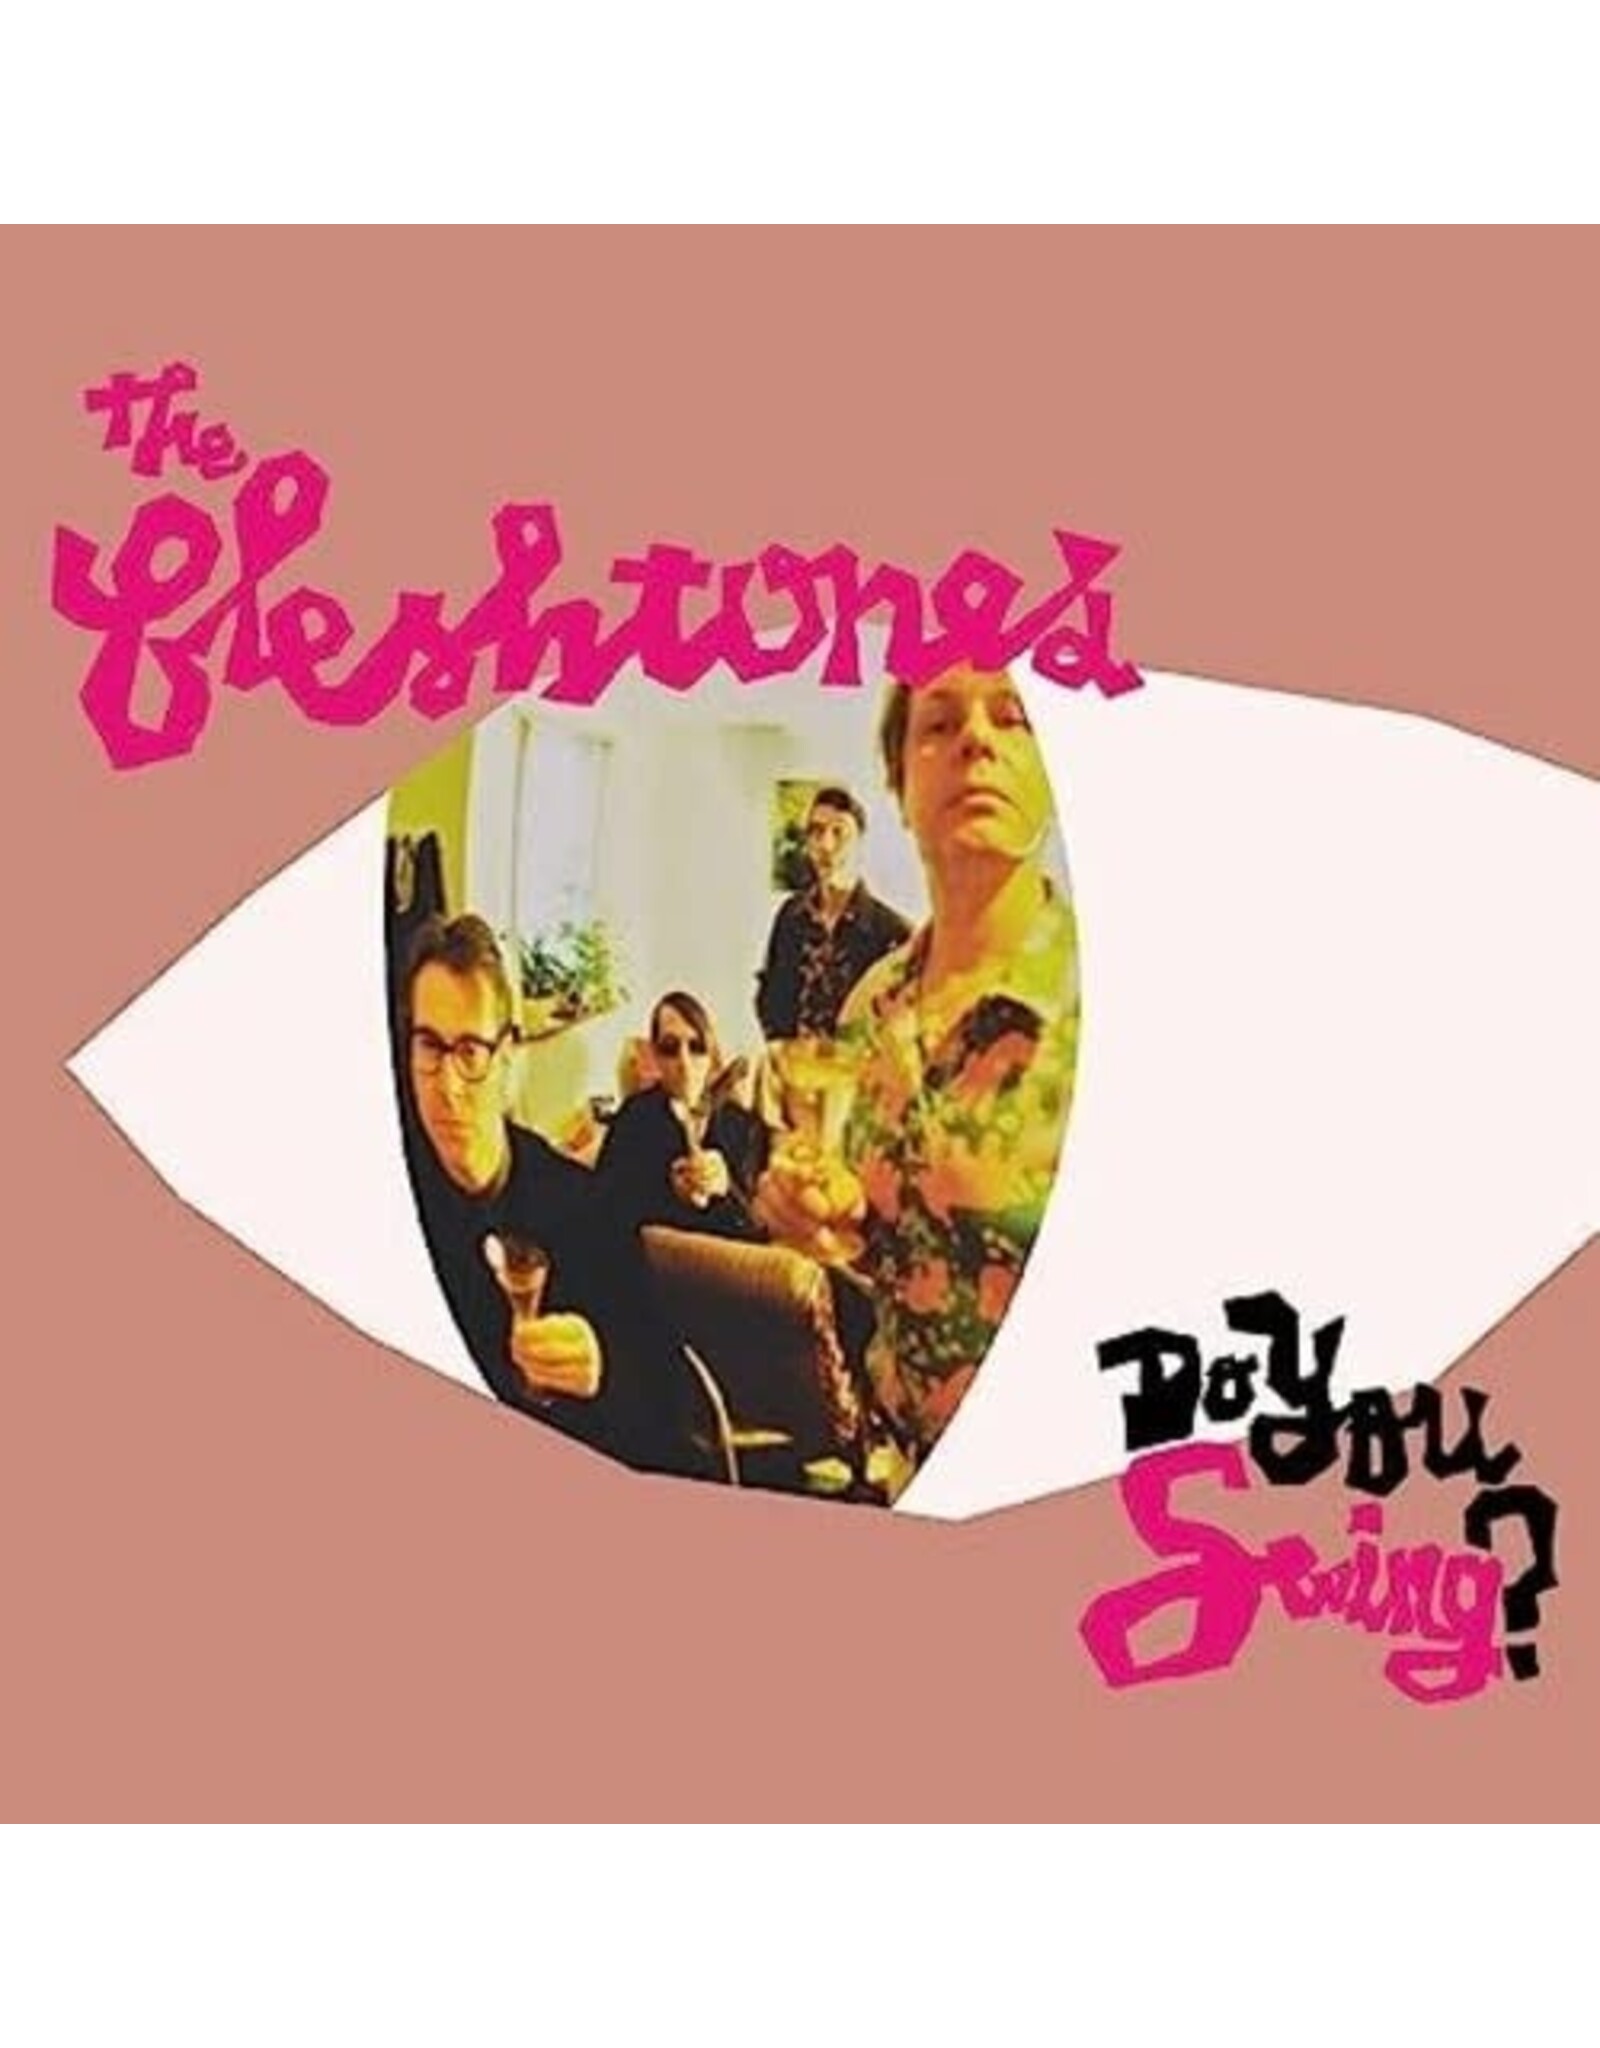 Fleshtones - Do You Swing? (20th Anniversary) [Pink Splatter Vinyl]